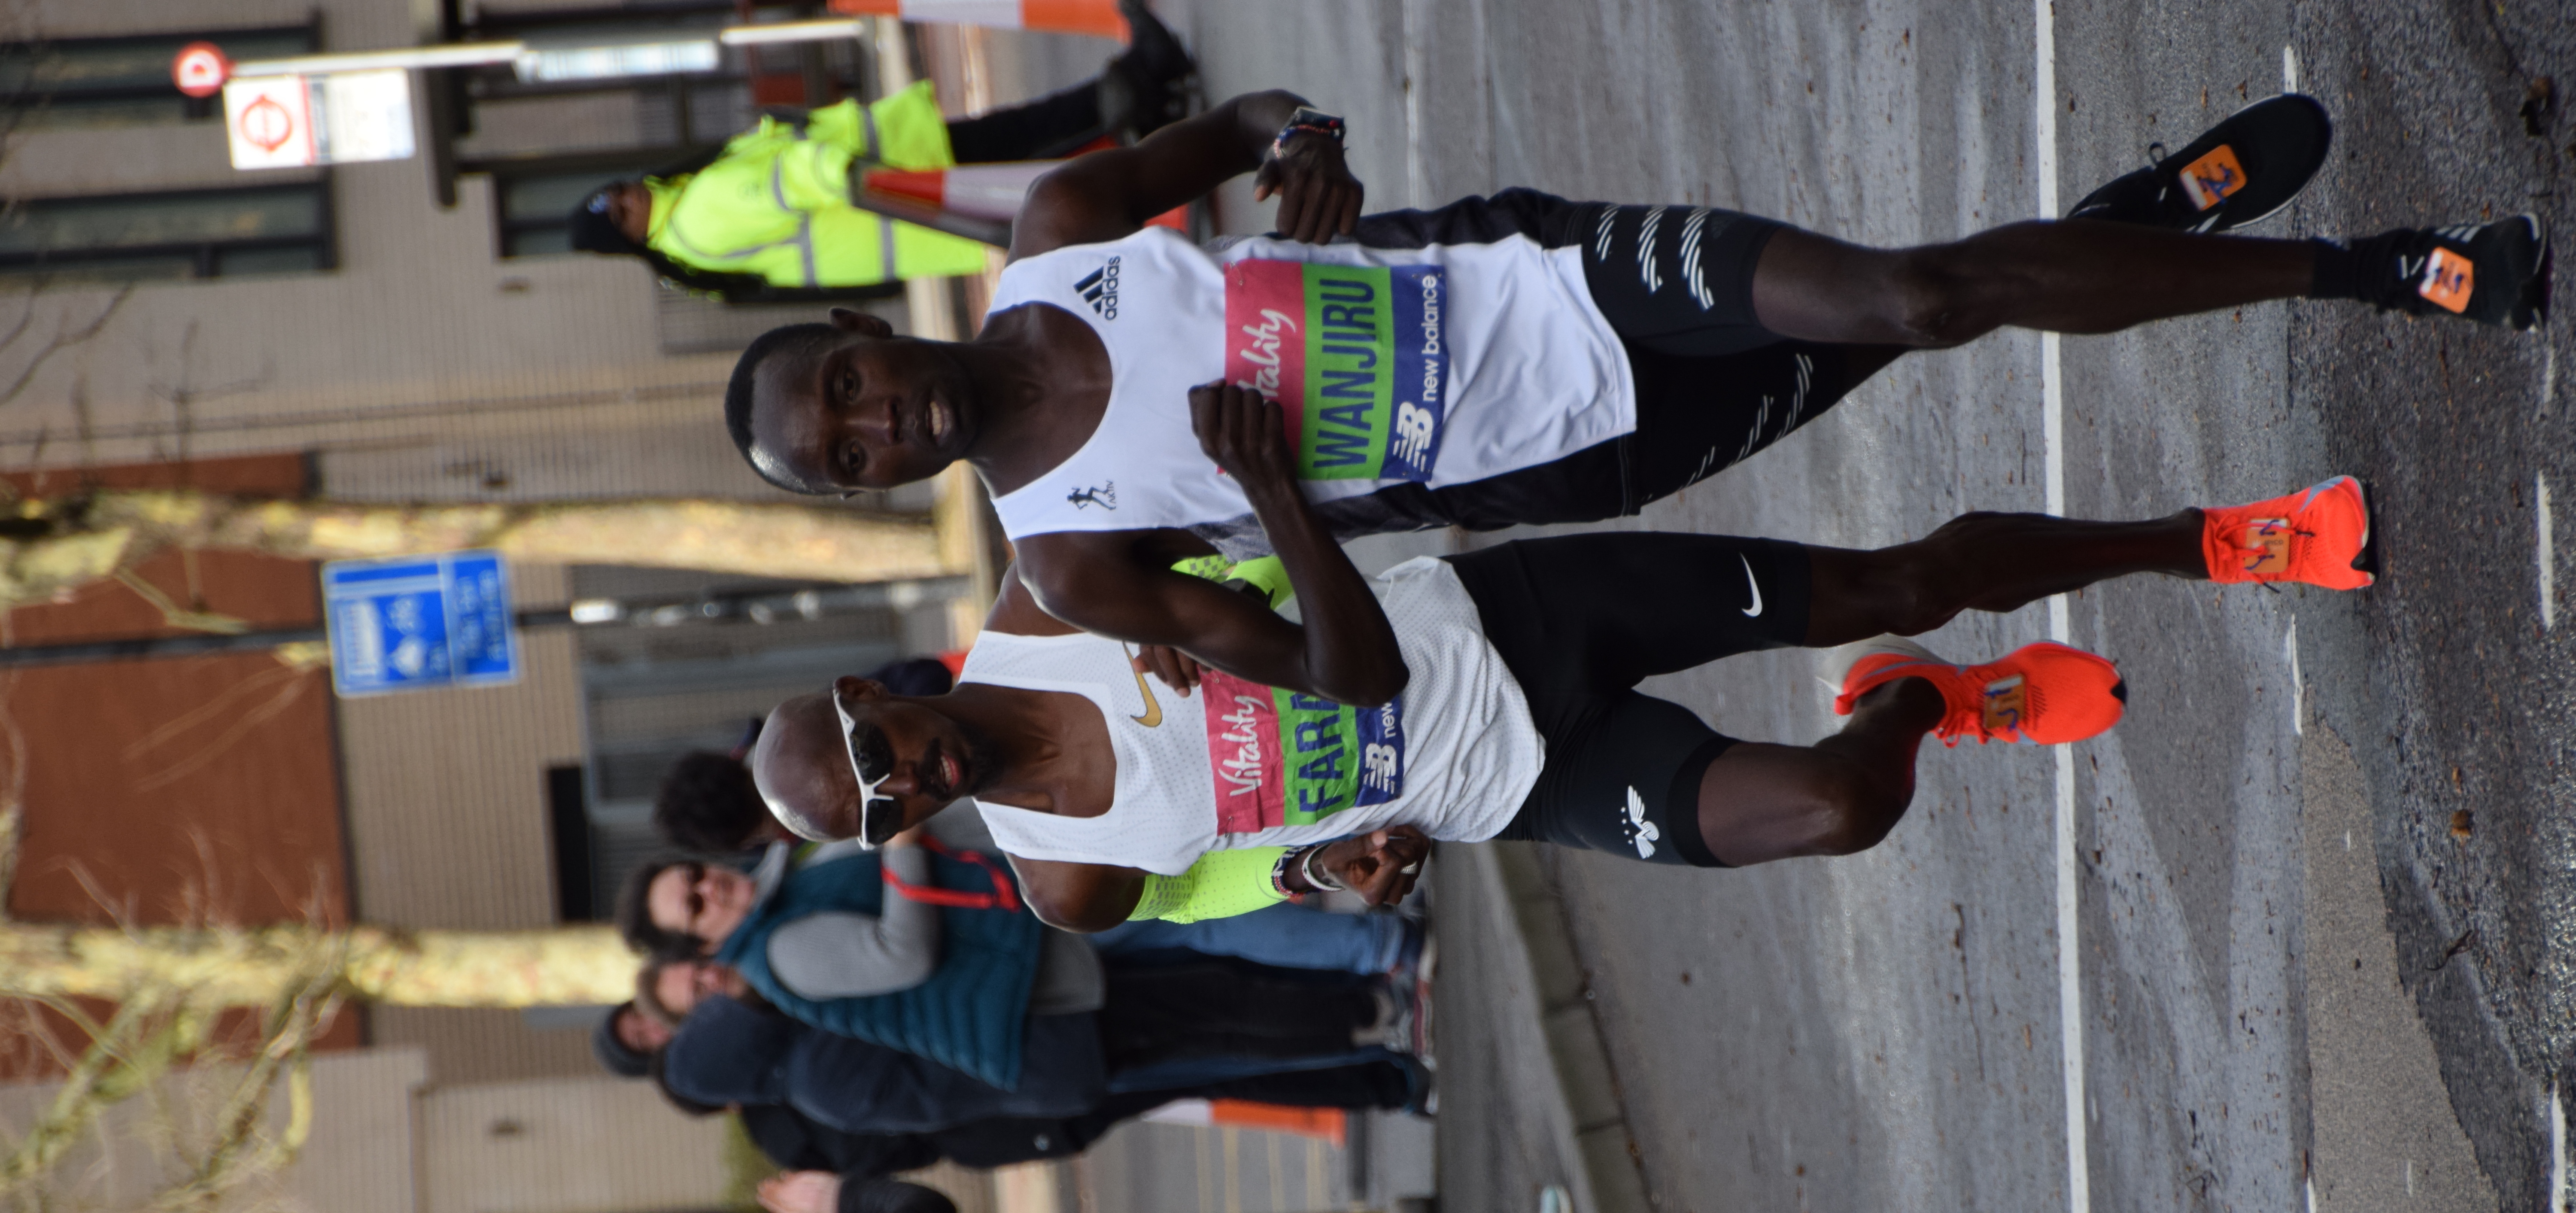 File:Mohamed Farah running the Vitality London Half Marathon 2019.jpg -  Wikimedia Commons